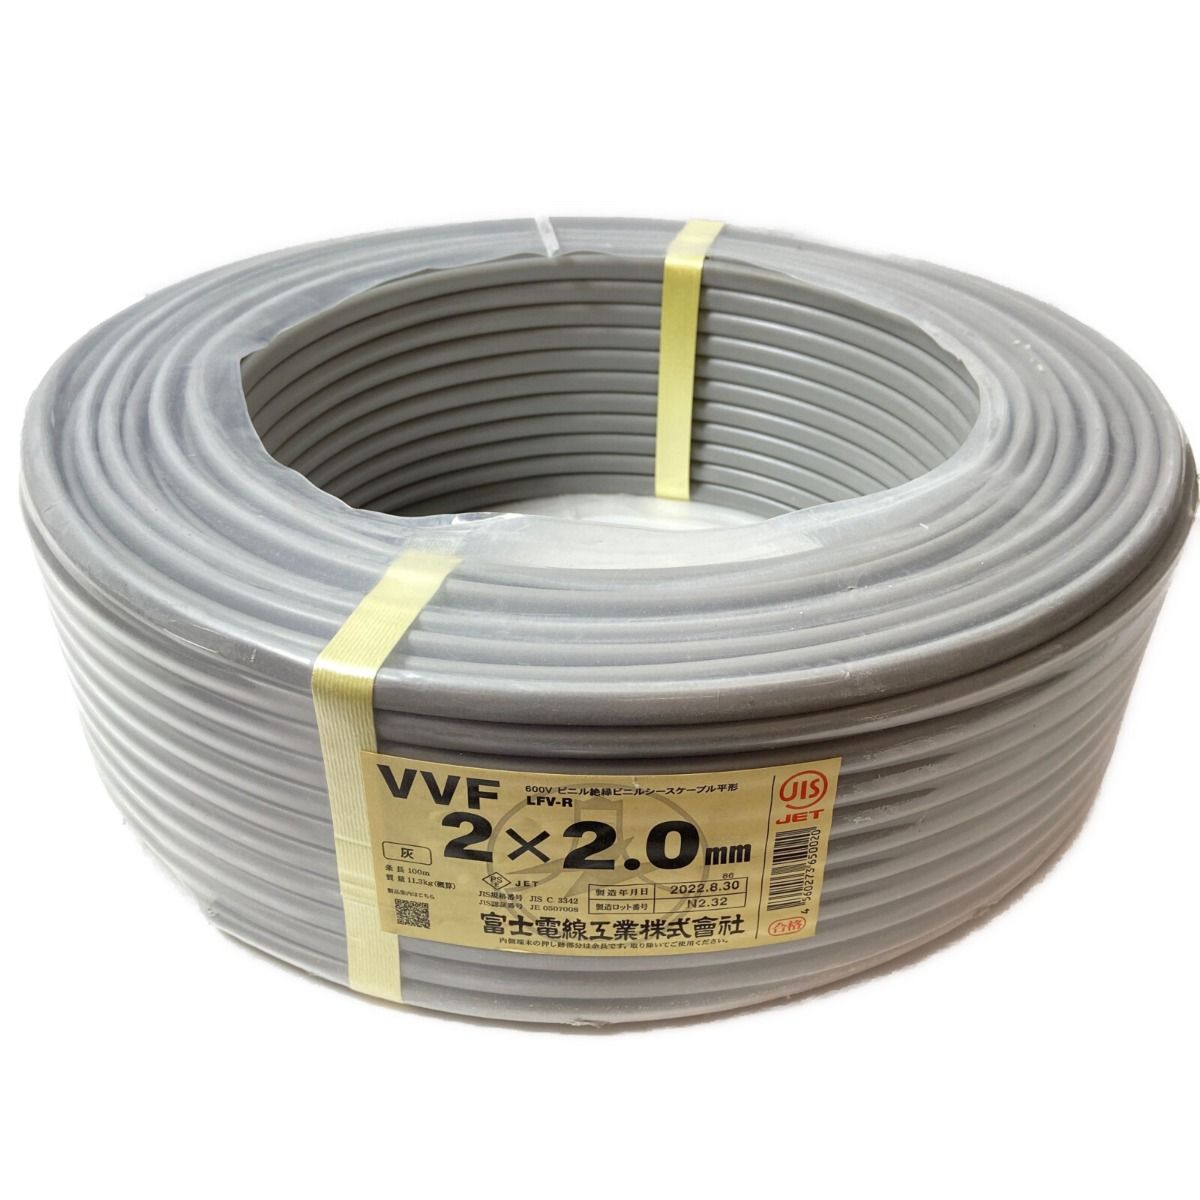 ΦΦ富士電線工業 VVFケーブル 平形 100m巻 灰 VVF2×2.0 2芯 N2.32